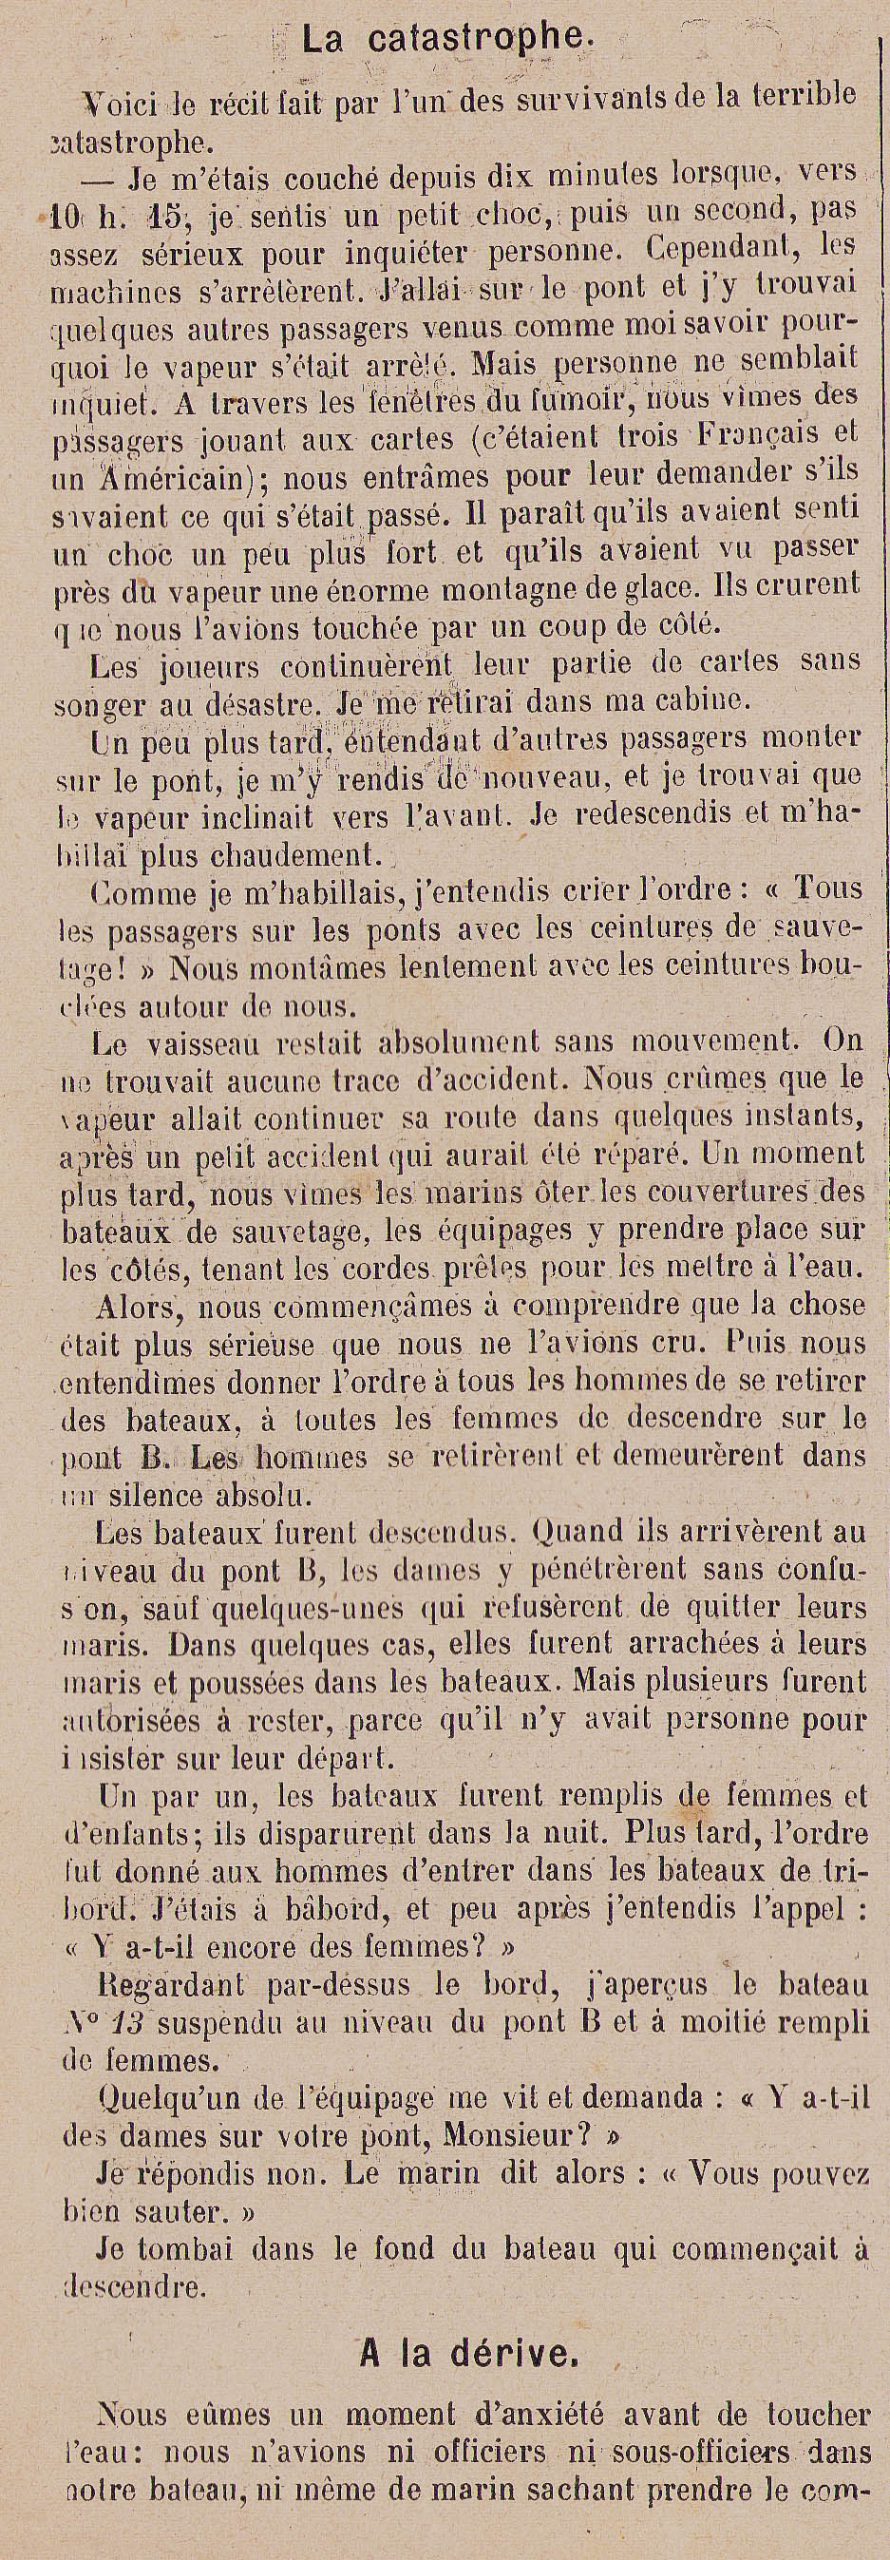 1912年4月28日民国元年法国《虔诚者》画报报道泰坦尼克号撞上冰山事件 